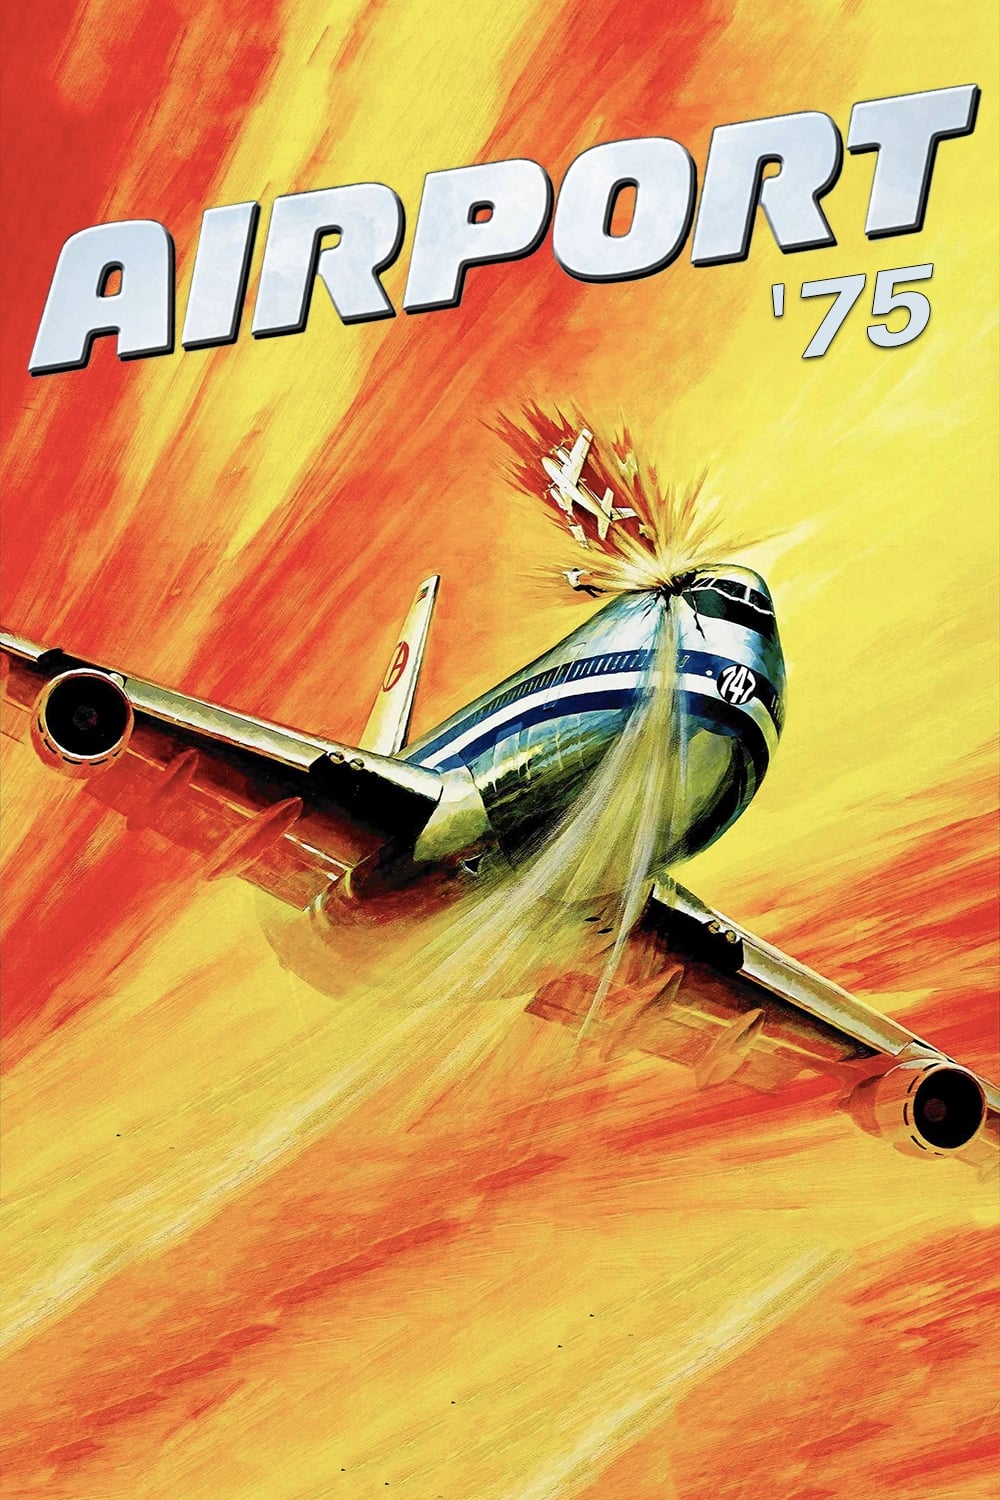 747 en péril (1974)